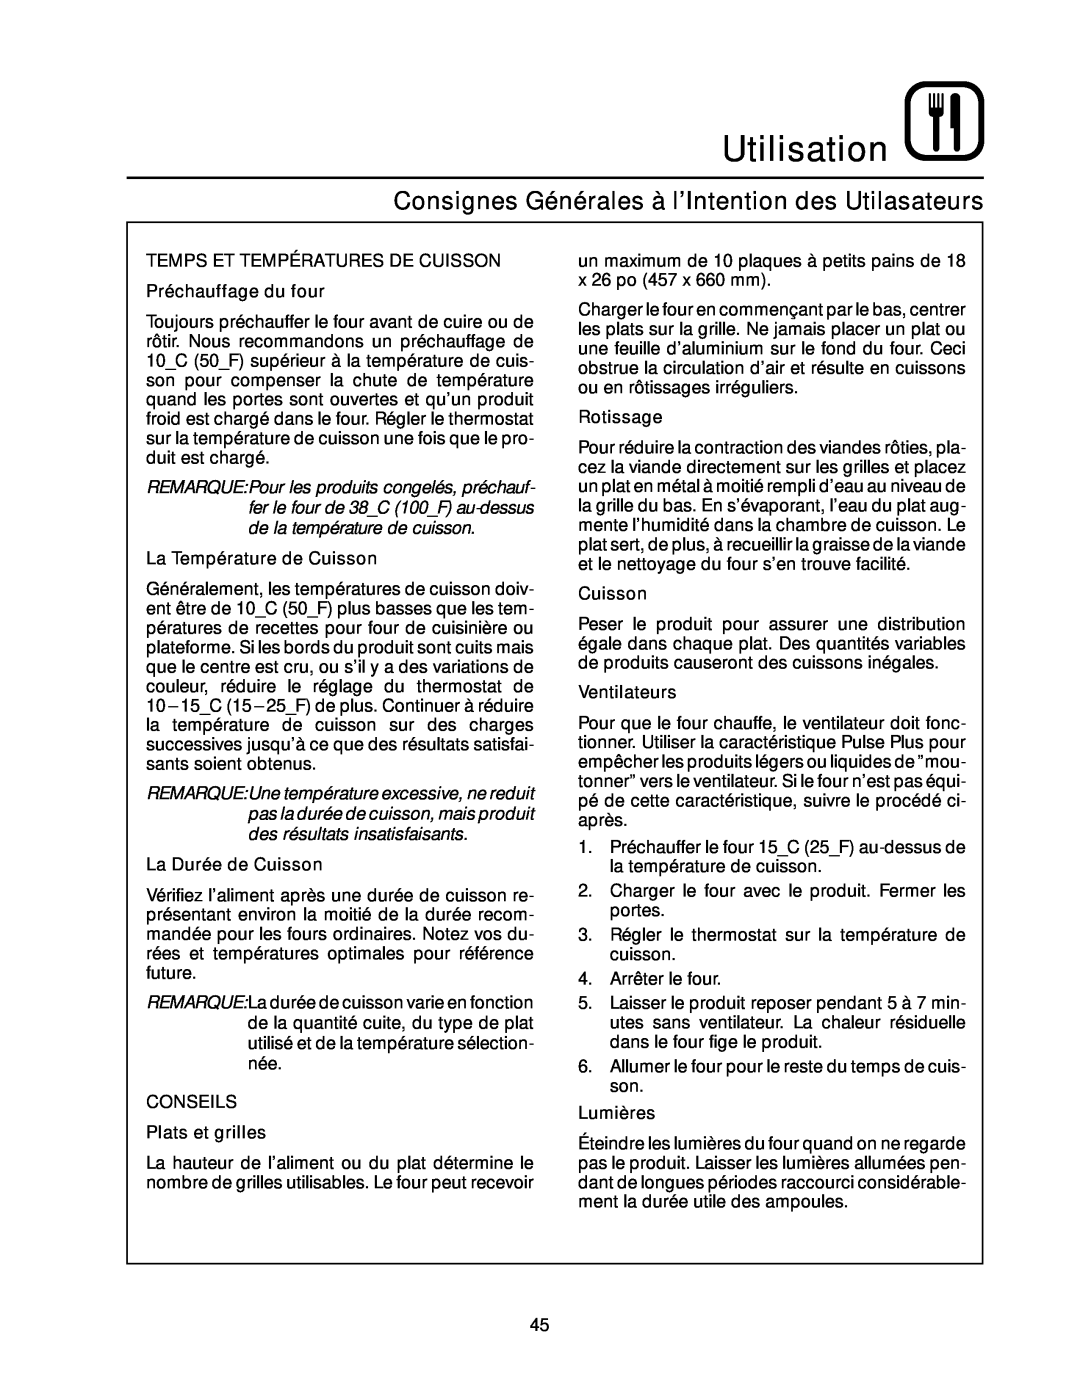 Blodgett RE Series Consignes Générales à l’Intention des Utilasateurs, Utilisation, La Température de Cuisson, Rotissage 